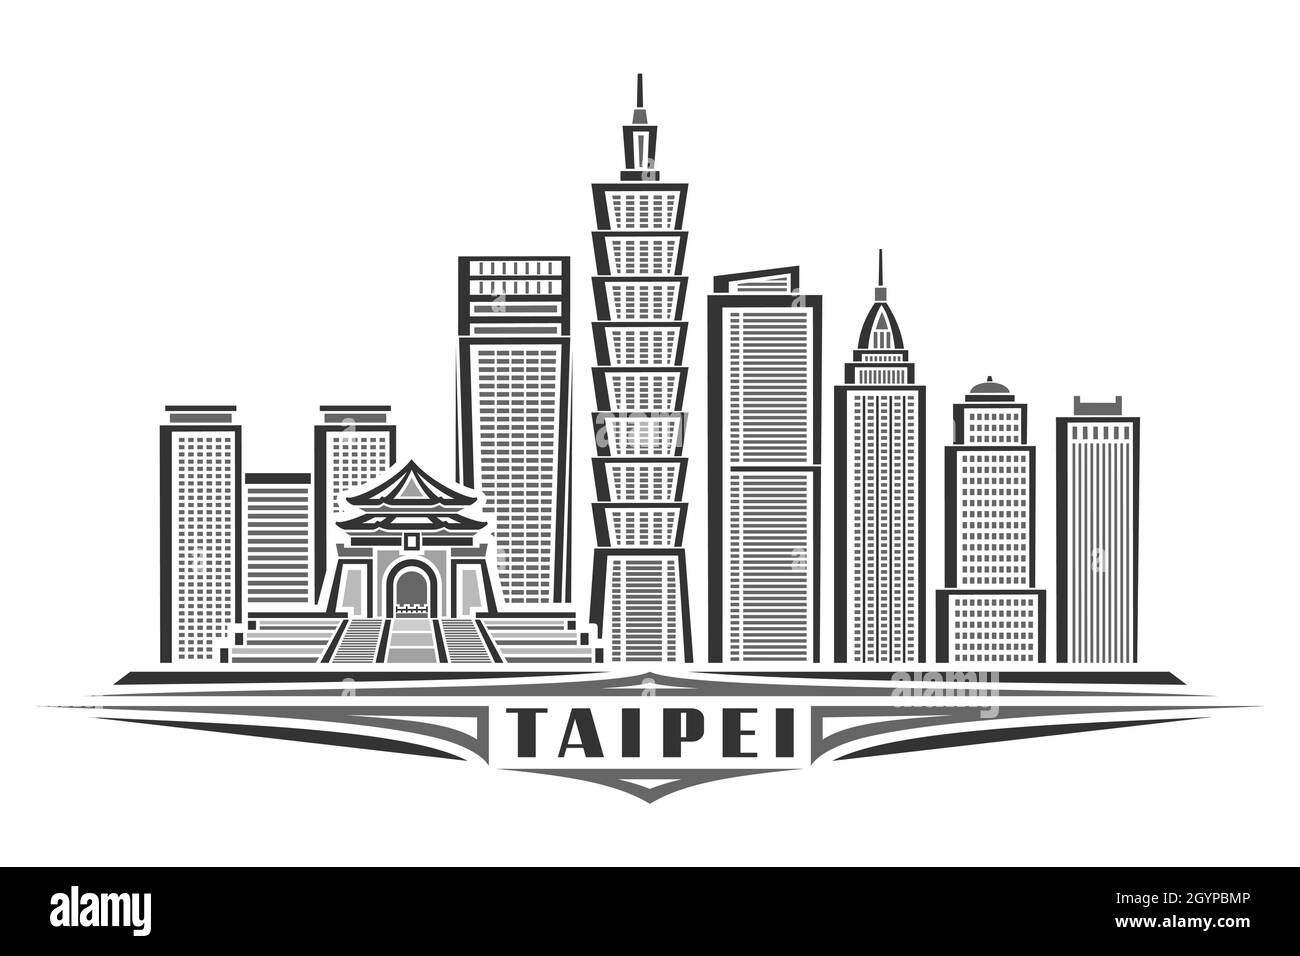 Vektor-Illustration von Taipei, monochromes horizontales Poster mit linearem Design berühmte stadtlandschaft von taipei, urbanes Linienkunstkonzept mit einzigartigem dekorativem Design Stock Vektor